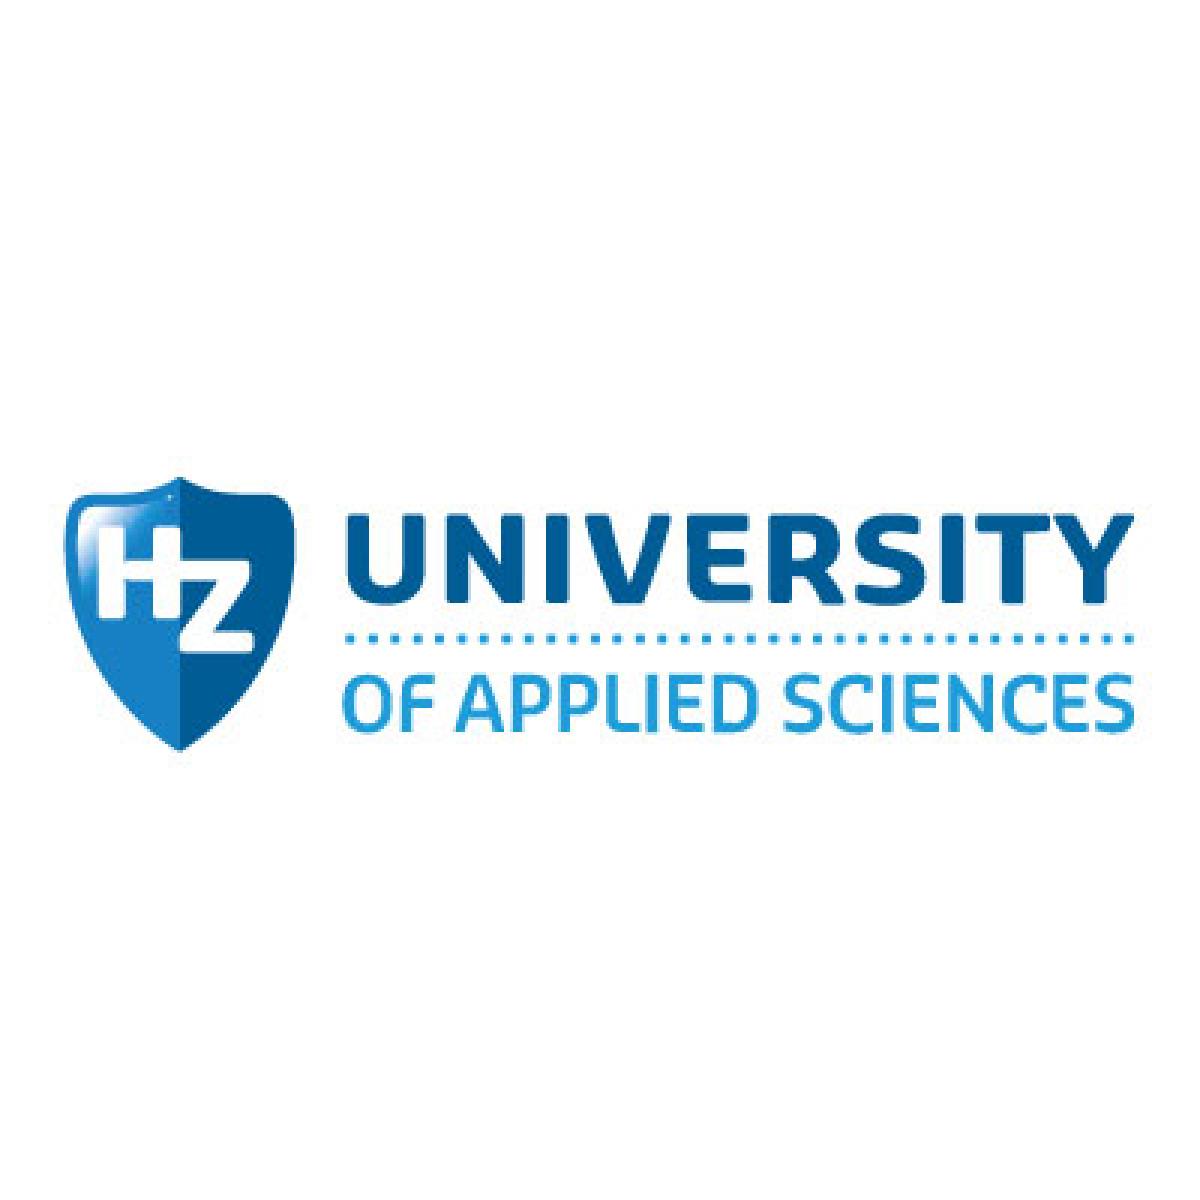 hz-university